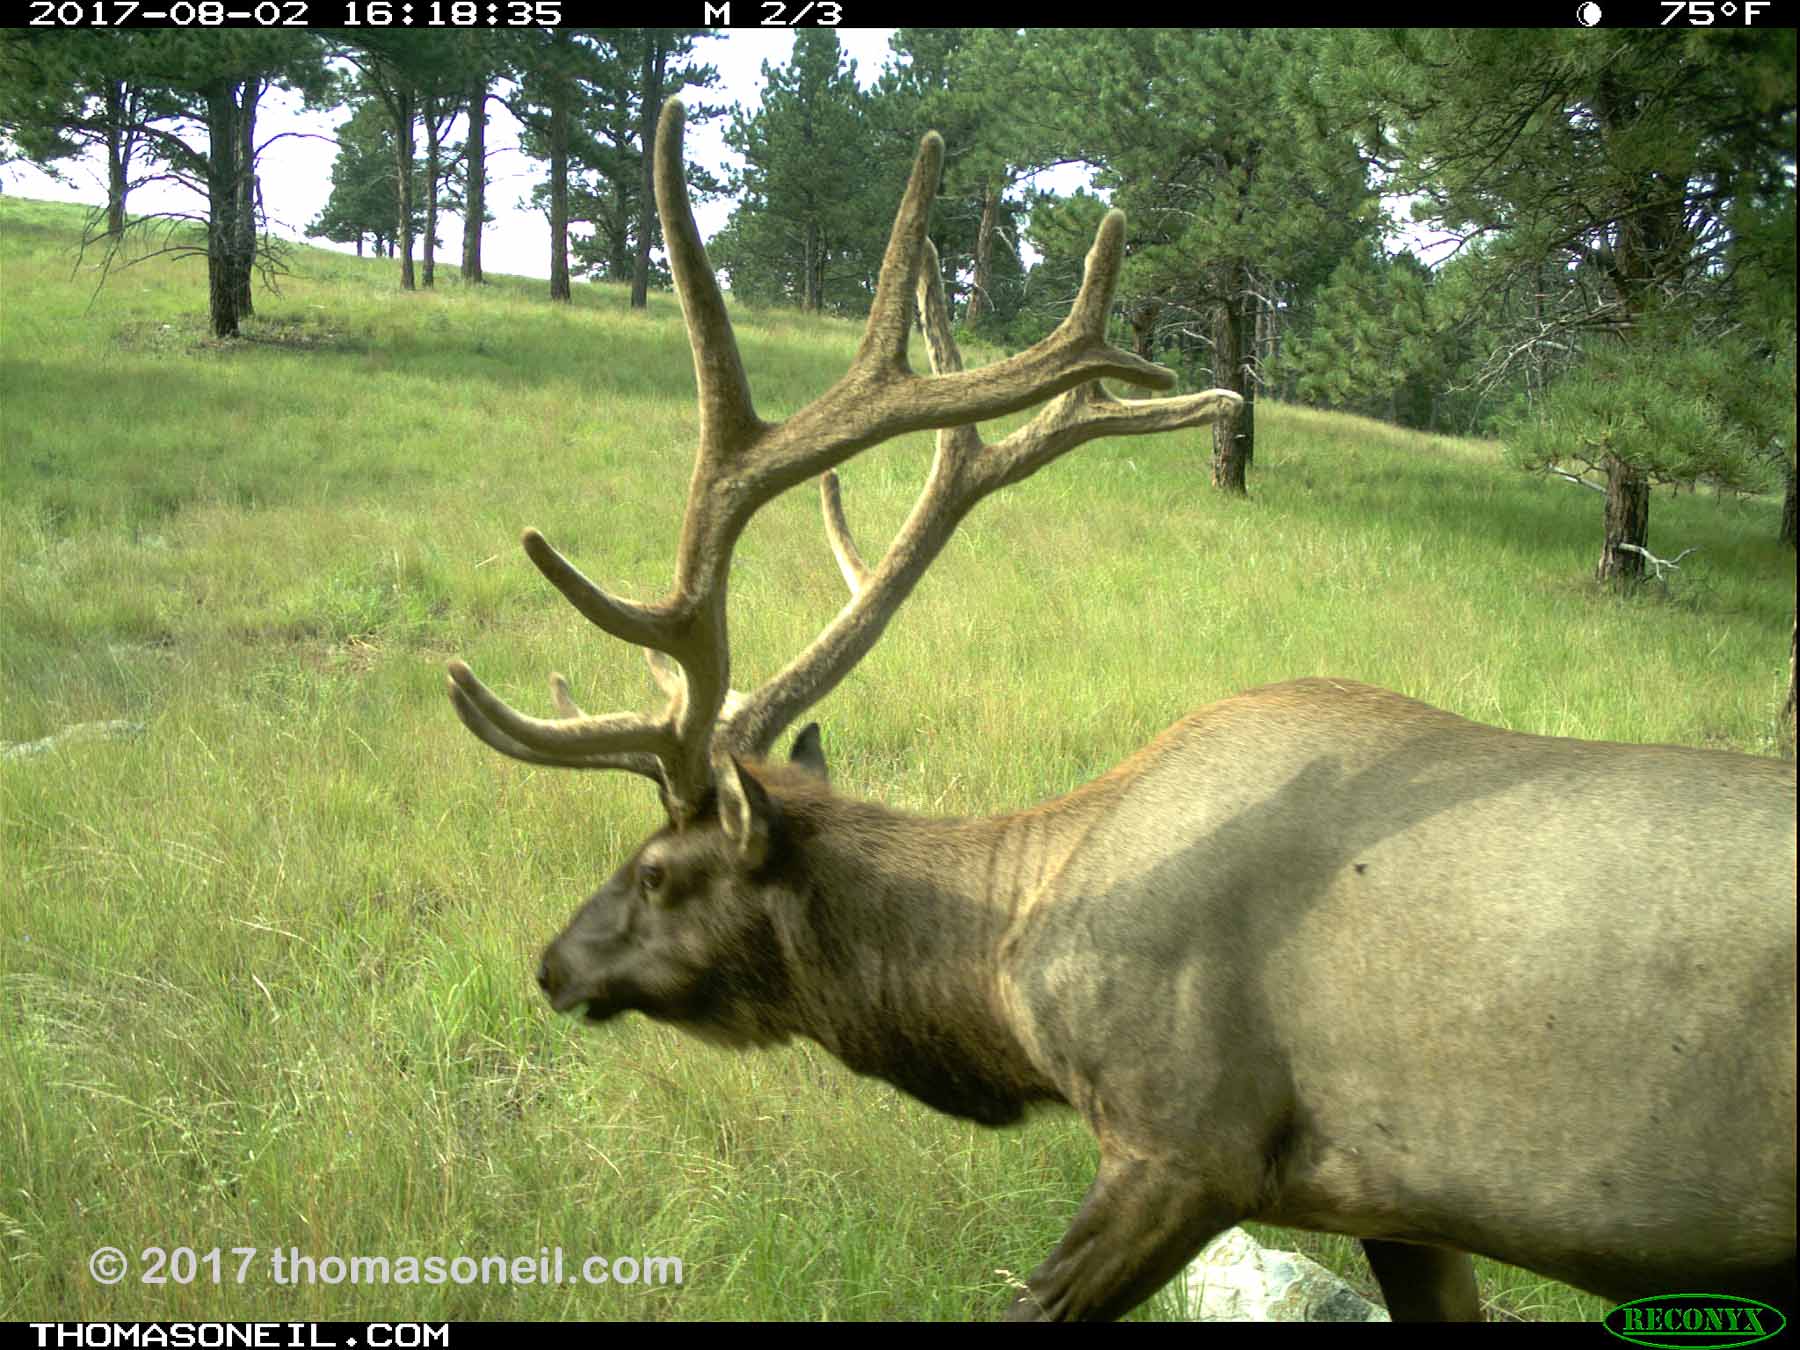 Elk, Aug. 2, 2017.